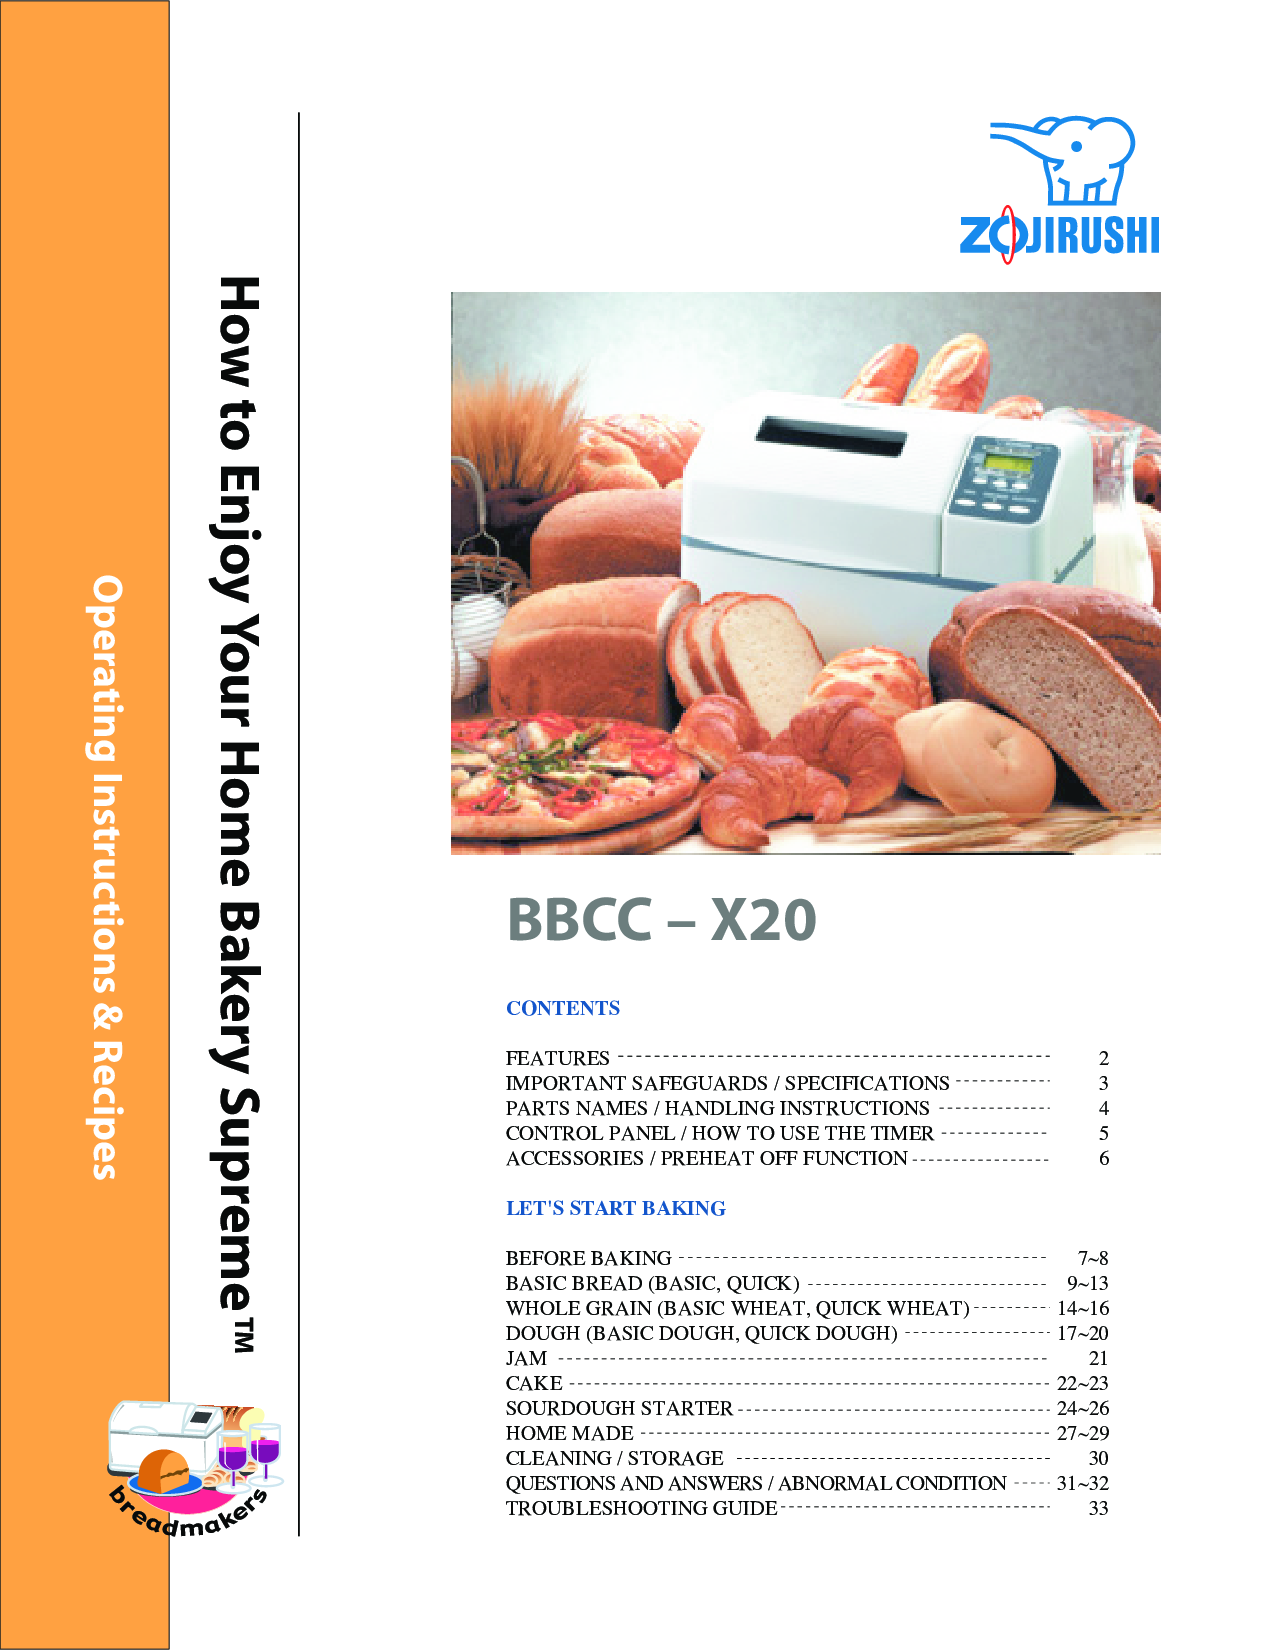 Zojirushi BBCC-X20 User Manual